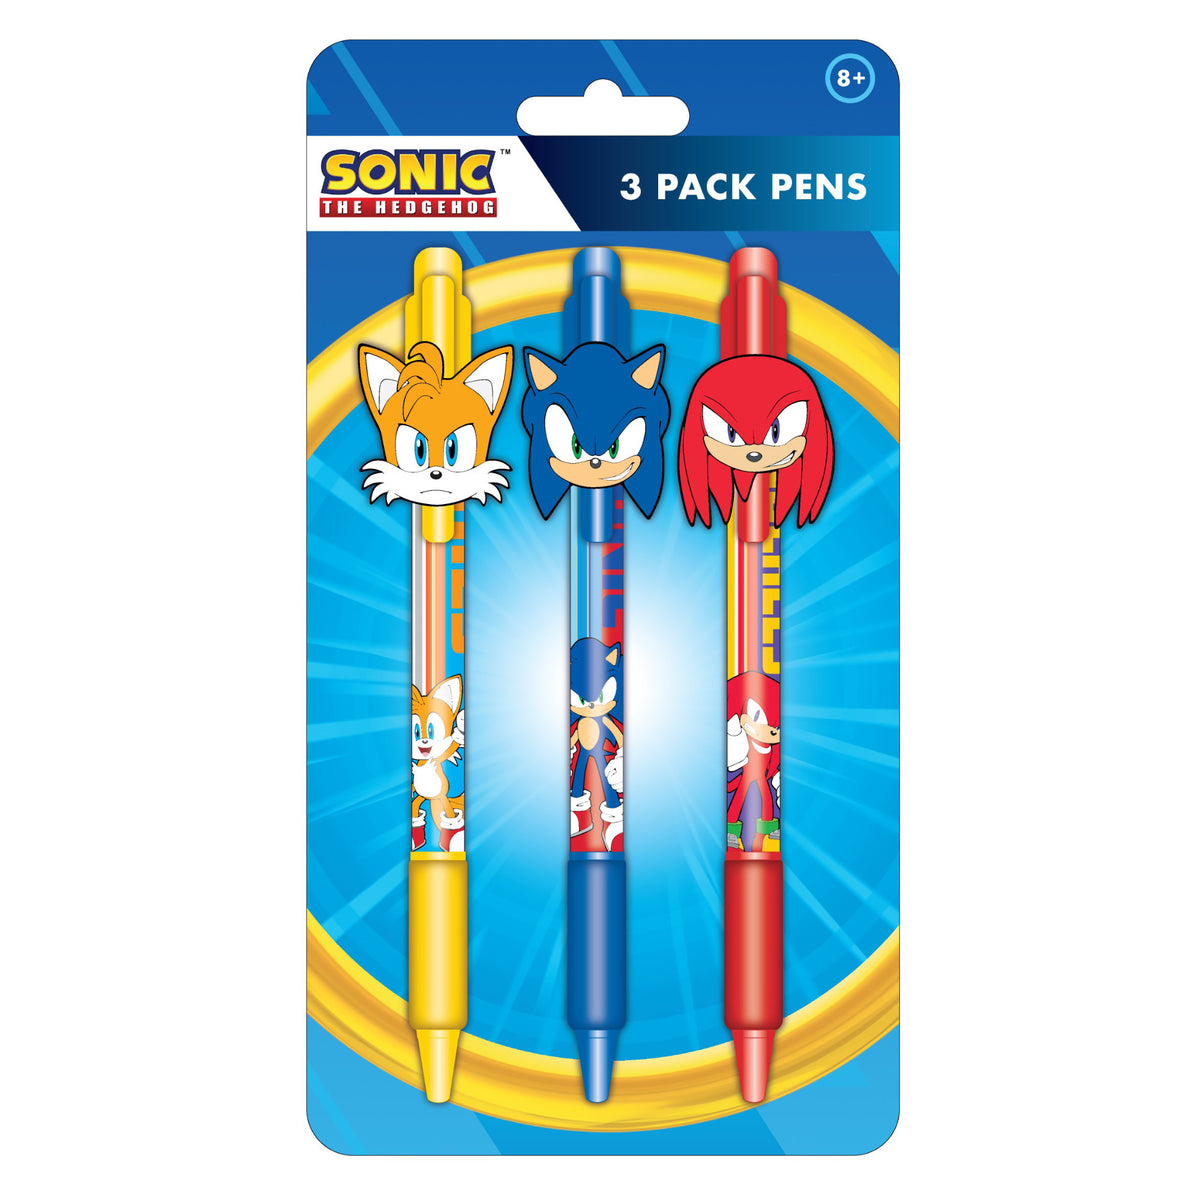 Sonic the Hedgehog 3 Pack Pen Set